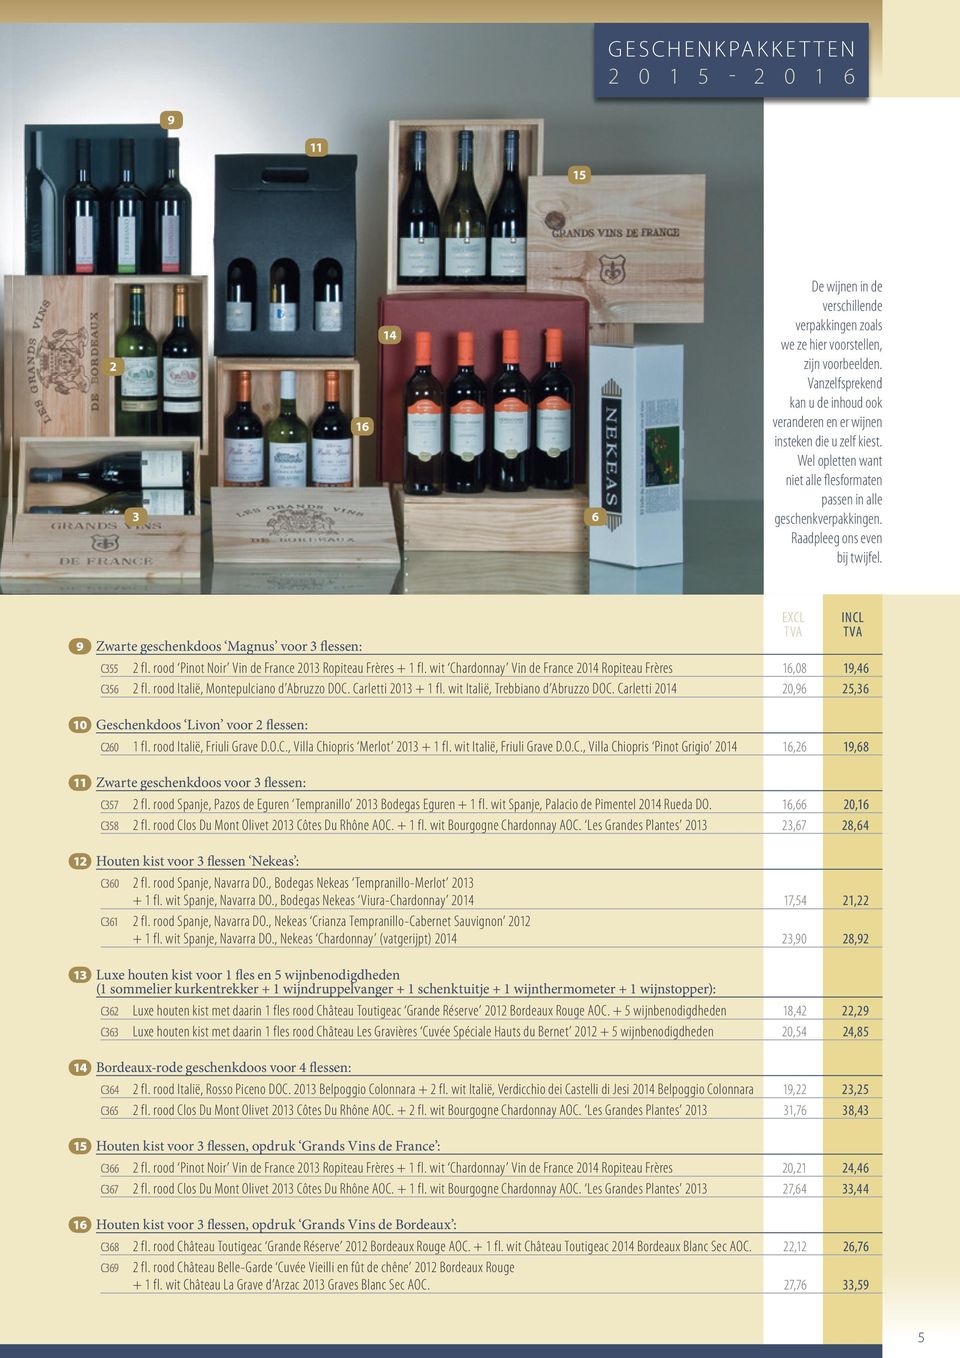 9 Zwarte geschenkdoos Magnus voor 3 flessen: C355 2 fl. rood Pinot Noir Vin de France 2013 Ropiteau Frères + 1 fl. wit Chardonnay Vin de France 2014 Ropiteau Frères 16,08 19,46 C356 2 fl.